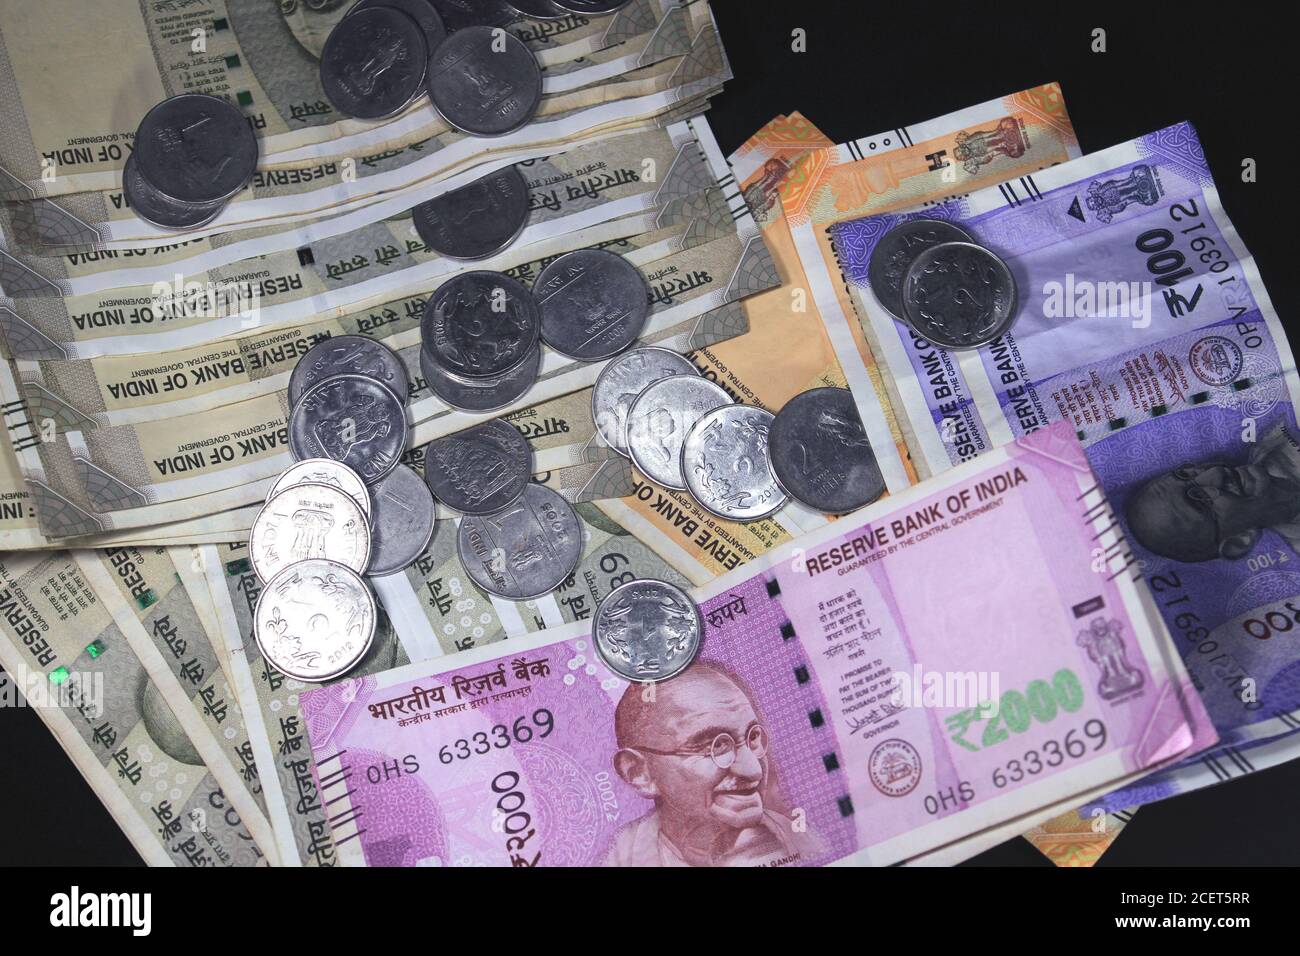 Aujourd’hui et dans l’ancienne monnaie indienne. billets et pièces de 50, 100, 200, 500, 2000 roupies. Monnaie indienne isolée sur fond noir. Banque D'Images